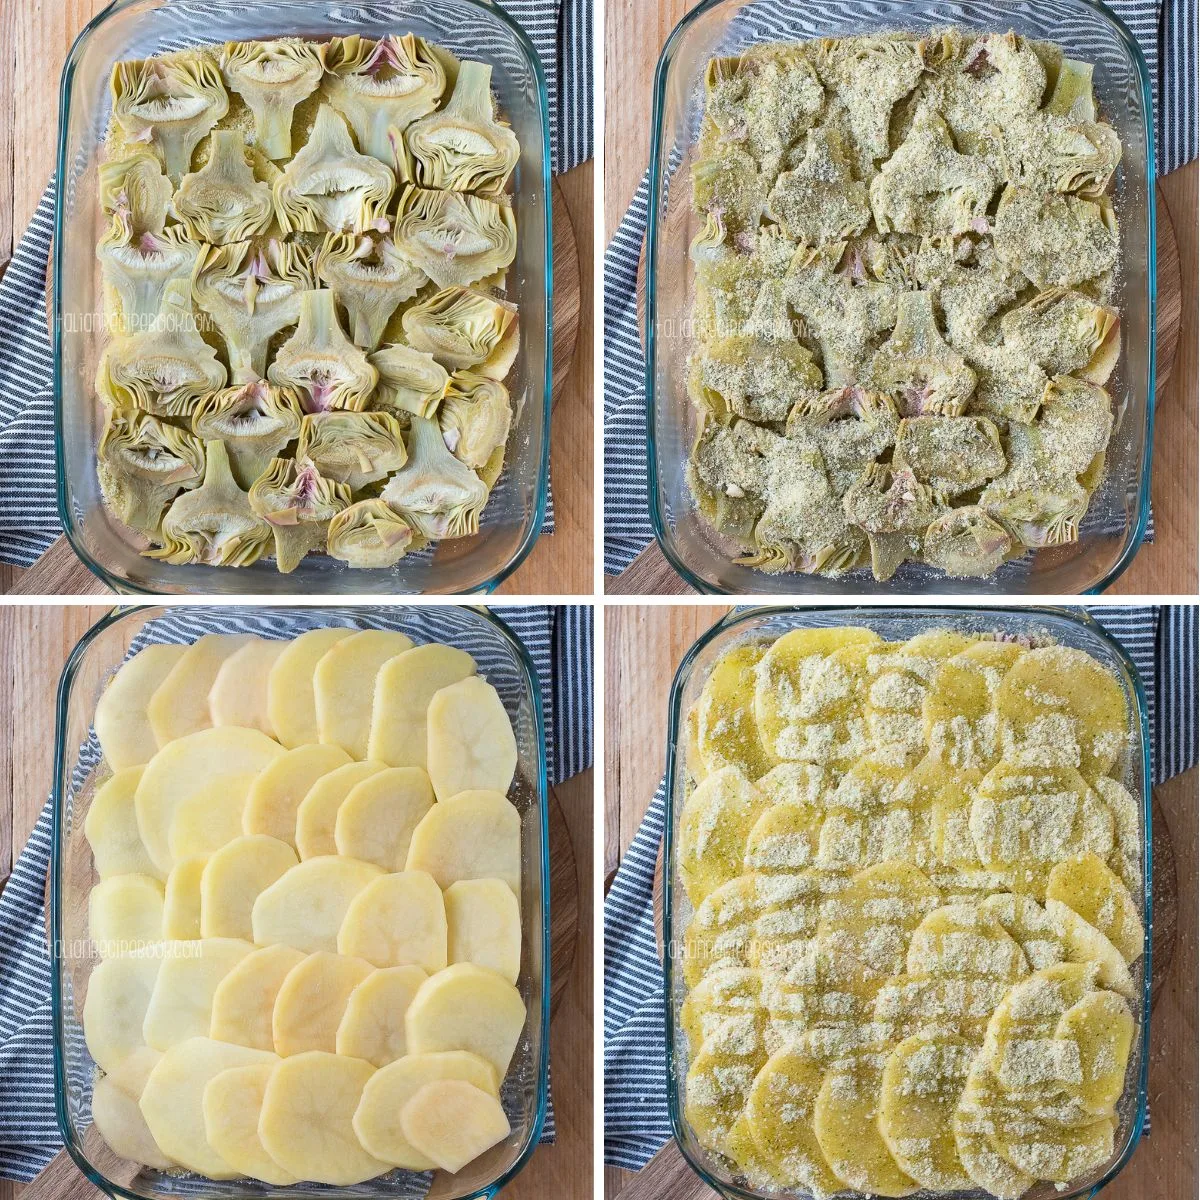 assembling artichoke and potato casserole